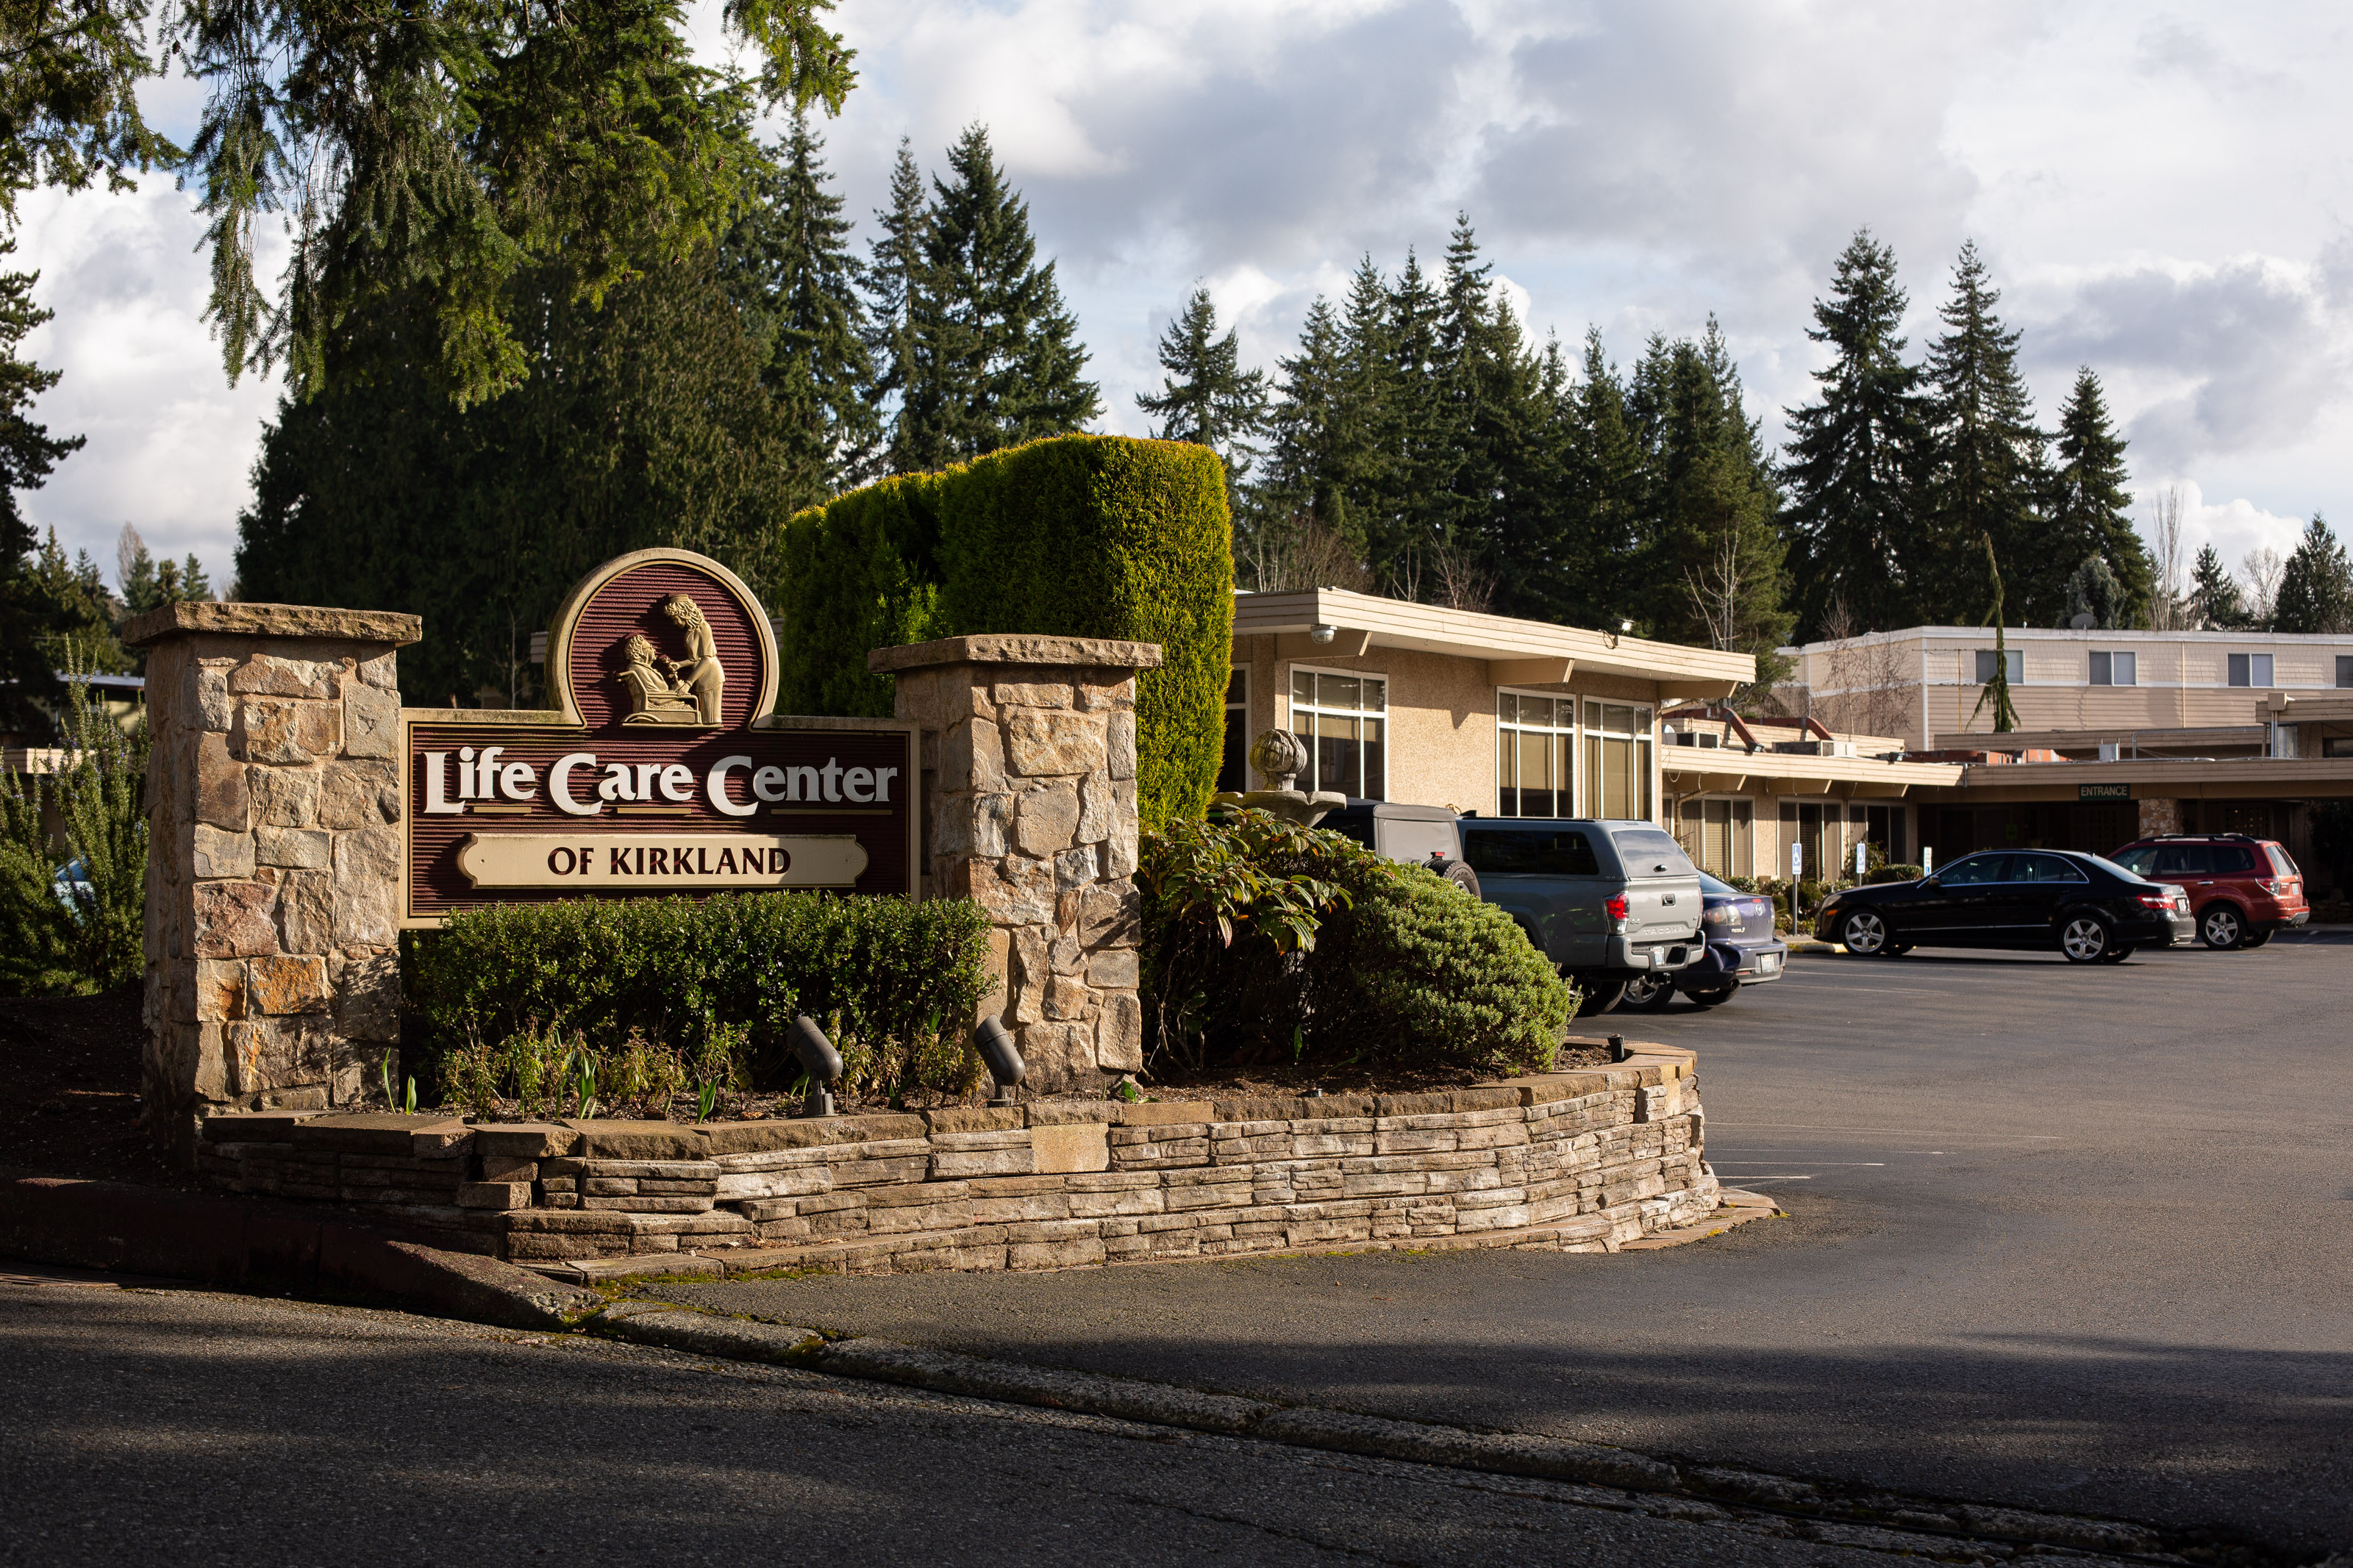 Life Care Center.